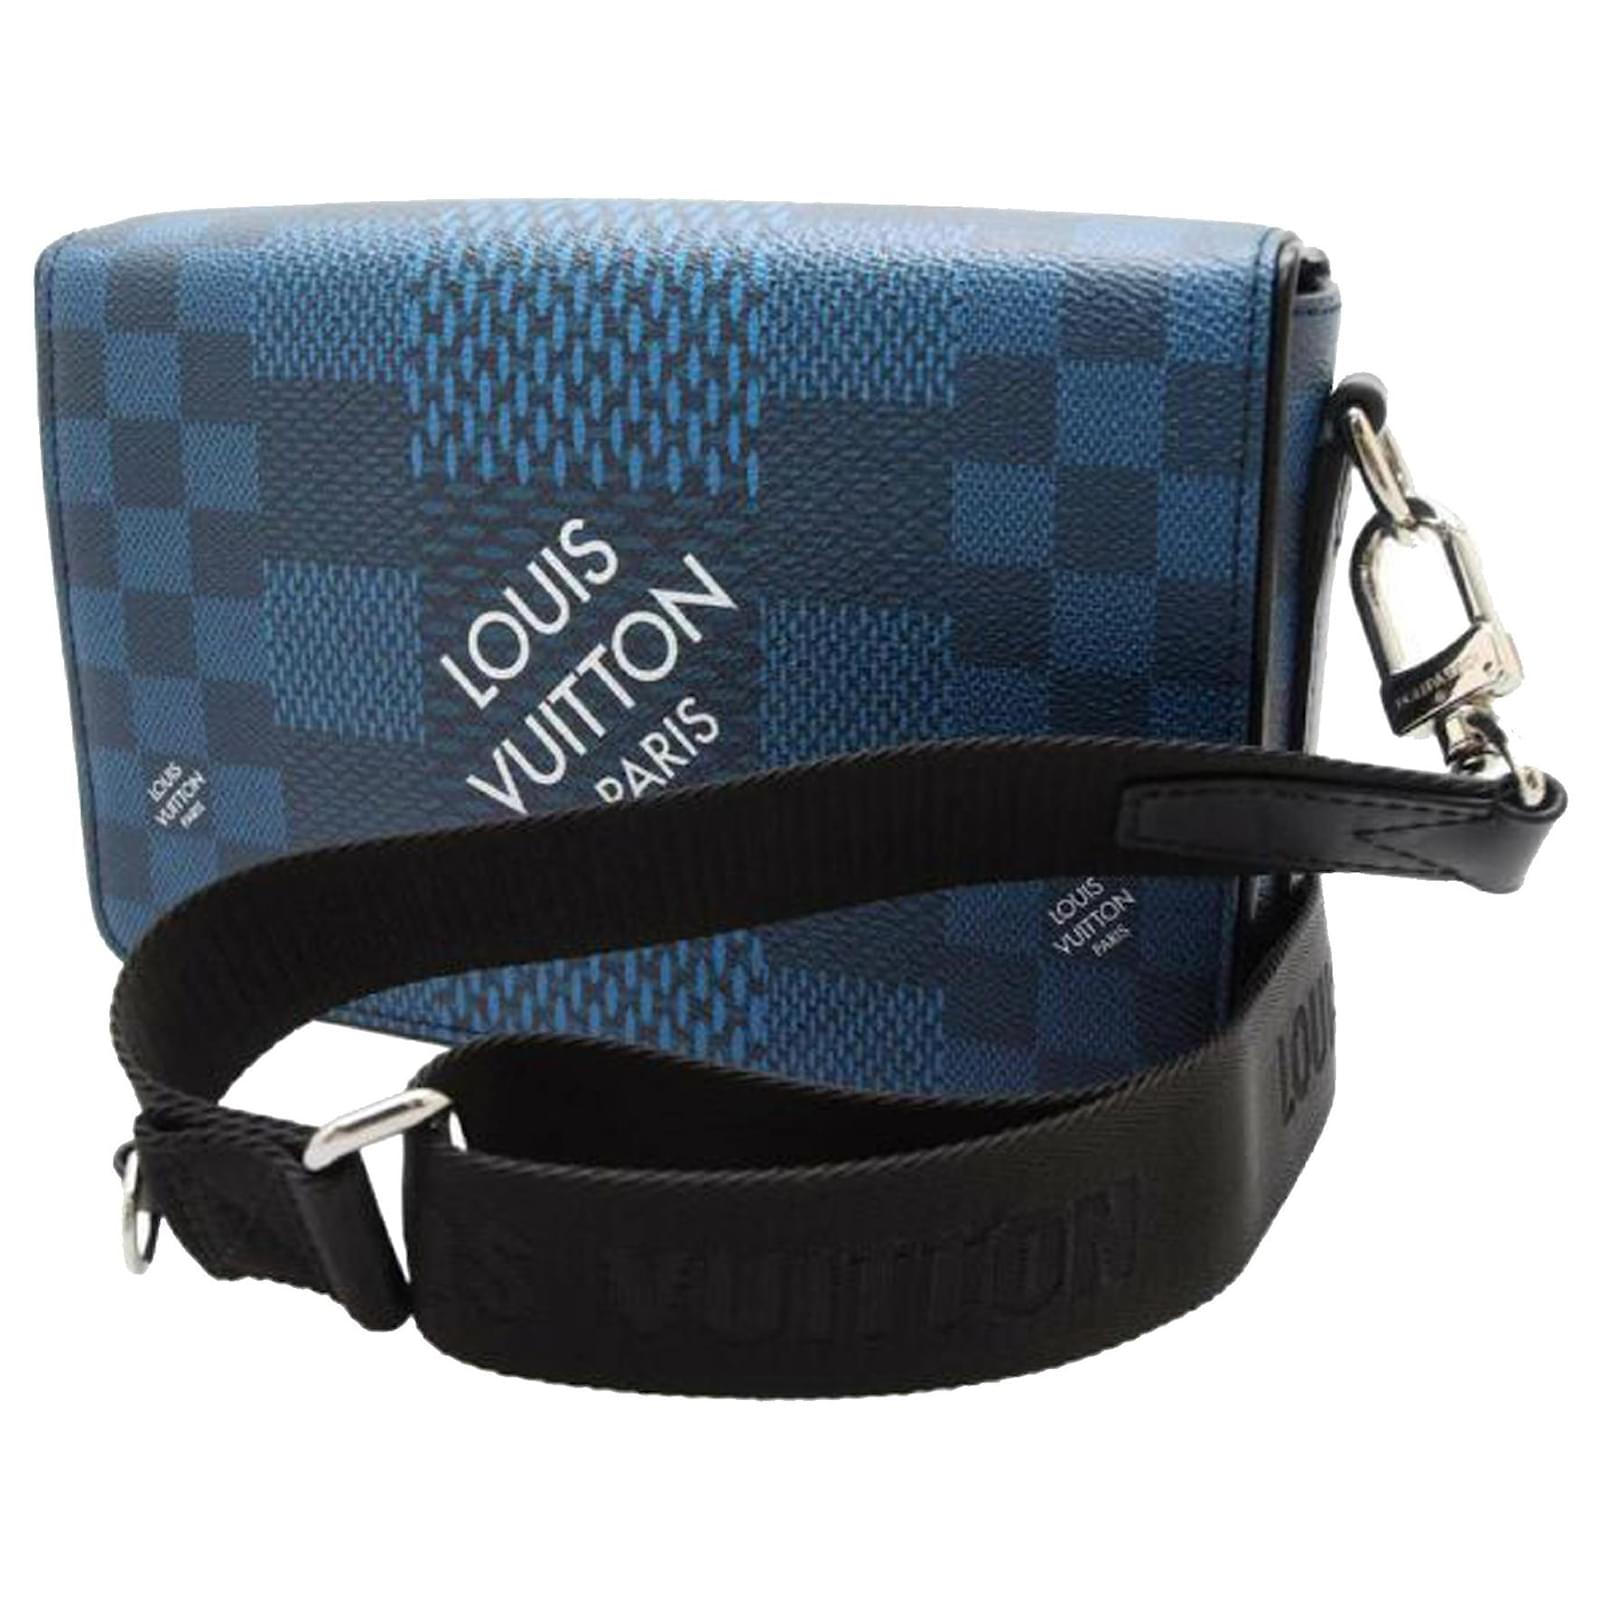 Louis Vuitton Men's Damier Leather Crossbody